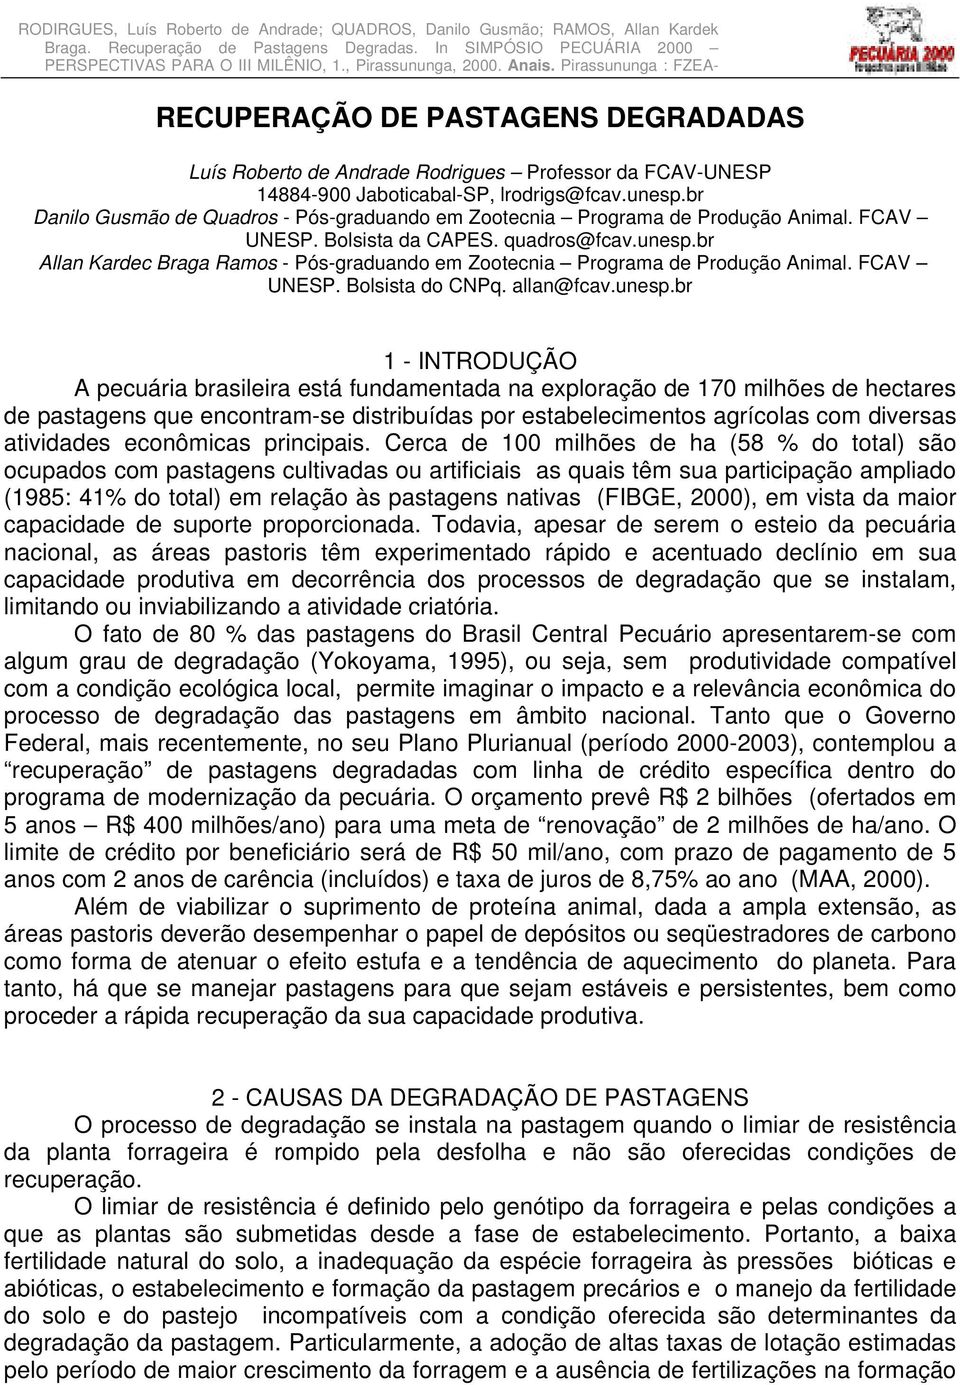 1 CD-ROM RECUPERAÇÃO DE PASTAGENS DEGRADADAS Luís Roberto de Andrade Rodrigues Professor da FCAV-UNESP 14884-900 Jaboticabal-SP, lrodrigs@fcav.unesp.